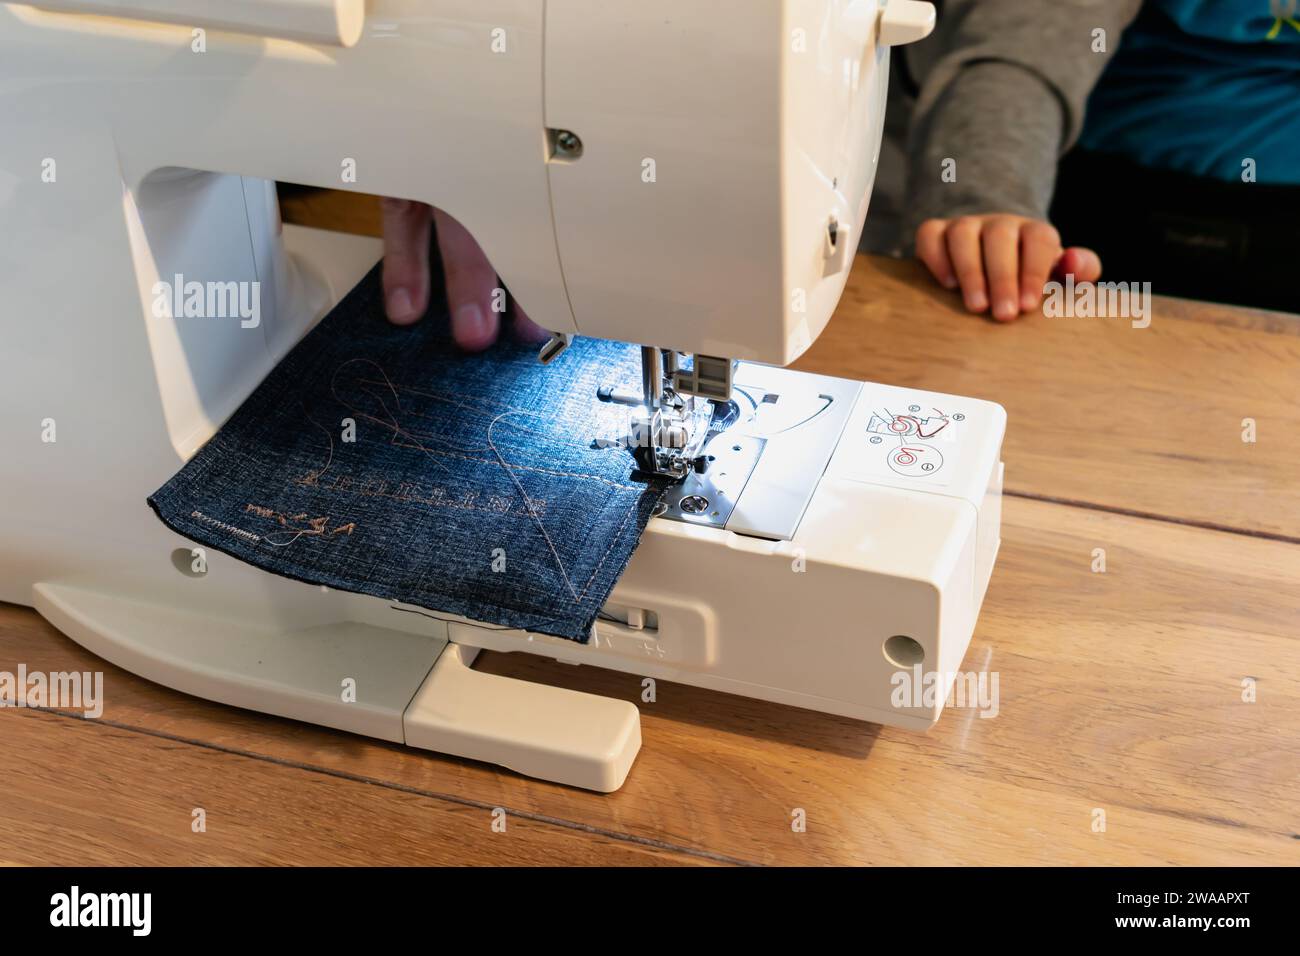 Uomo che usa una macchina da cucire con un indumento blu, per lavori di riparazione, personalizzazione, creazione, upcycling Foto Stock